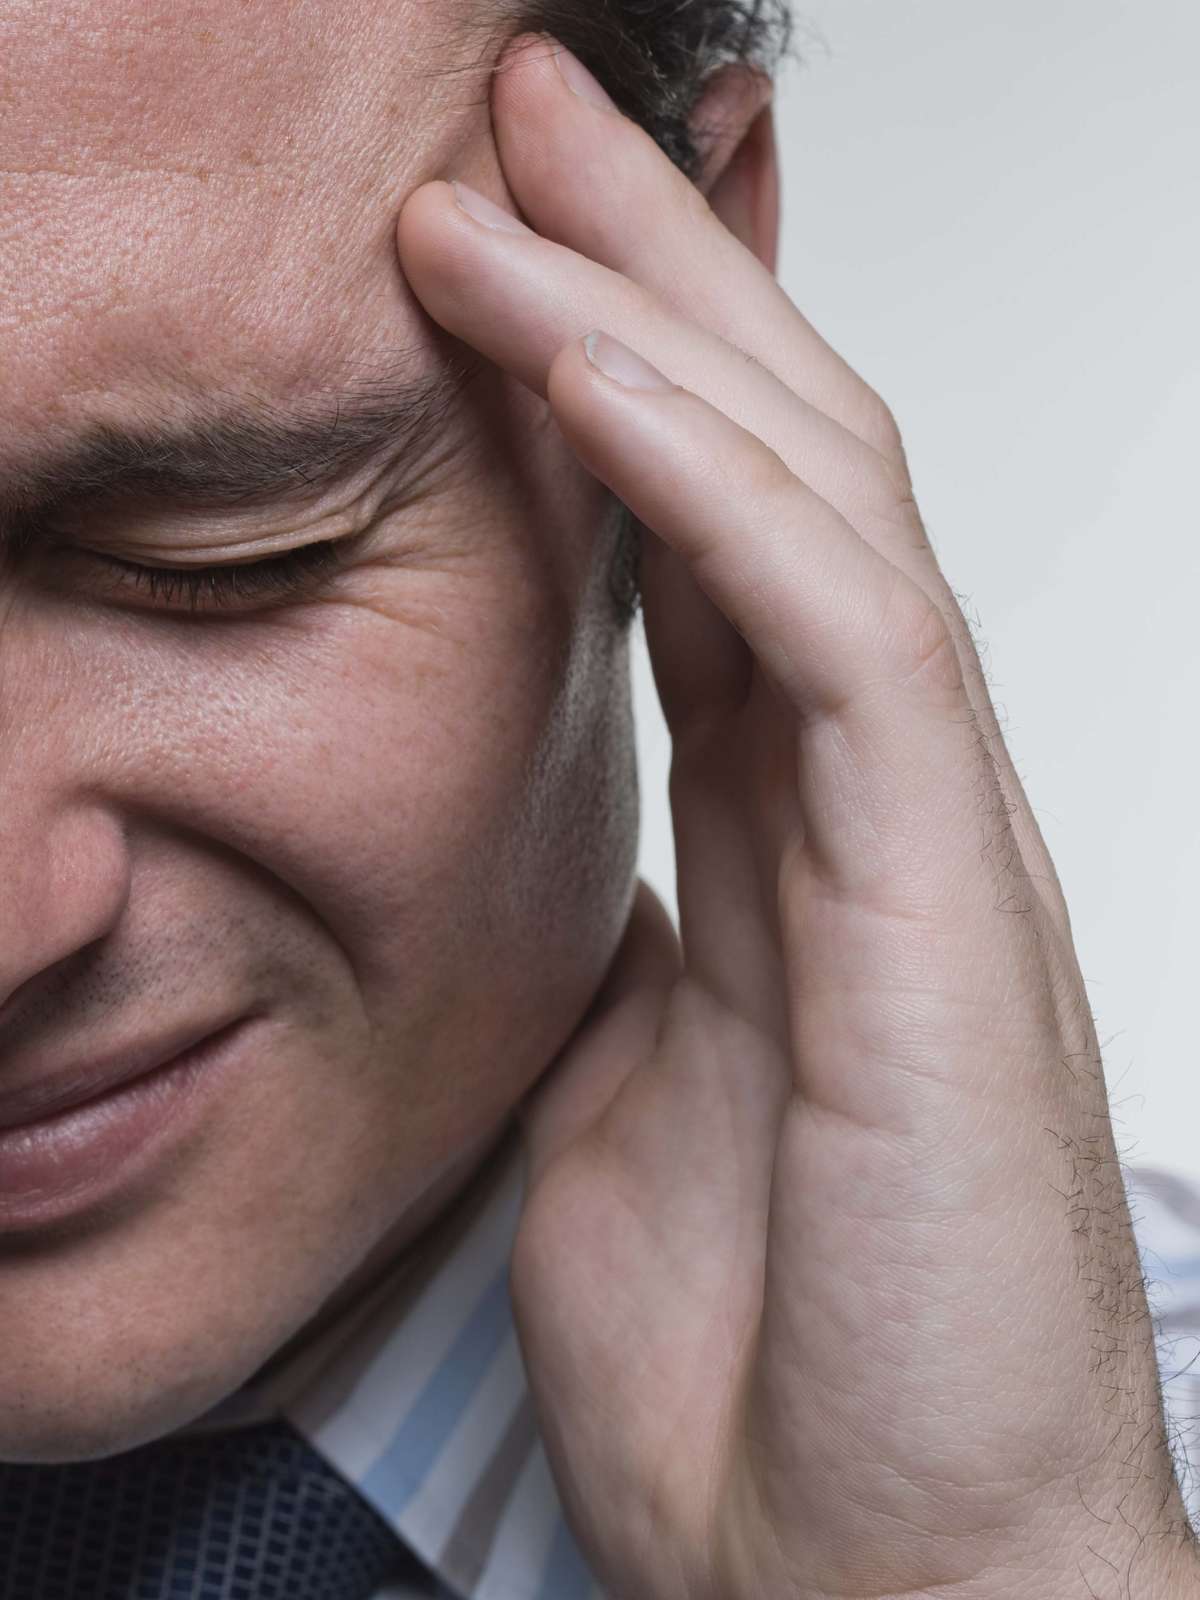 Dor no maxilar pode ser sintoma de ansiedade